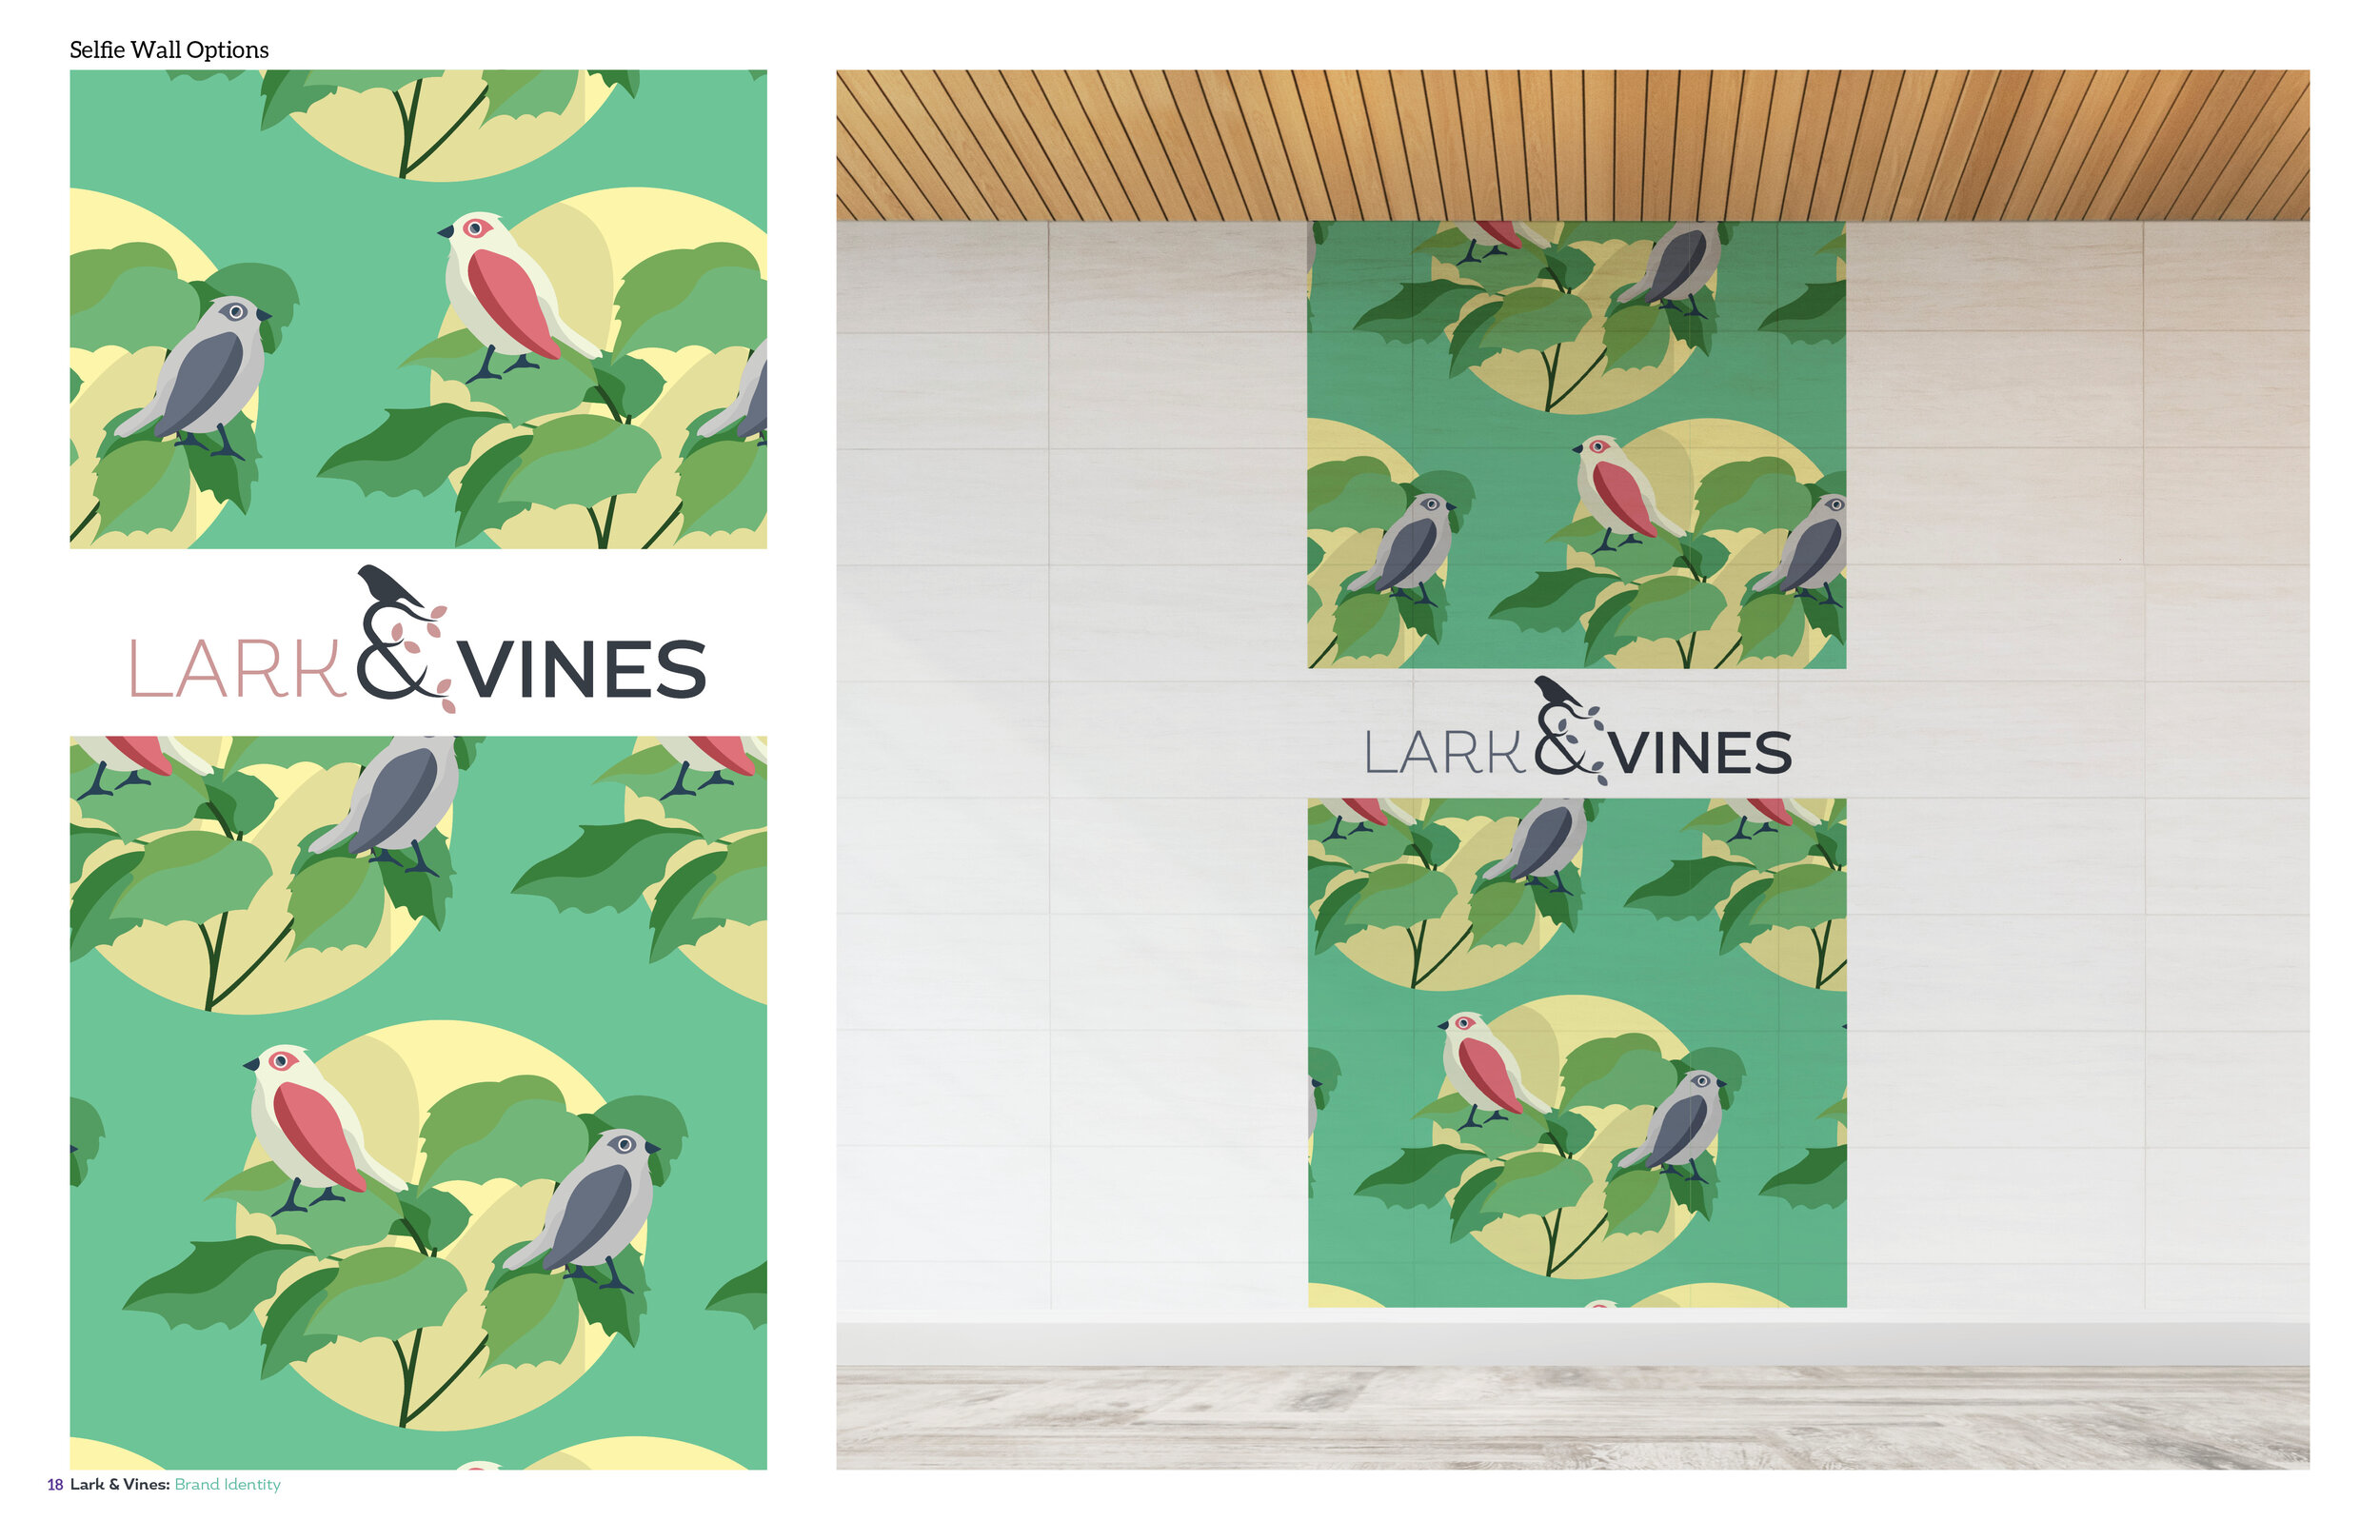 Lark & Vines Brand Guidelines18.jpg